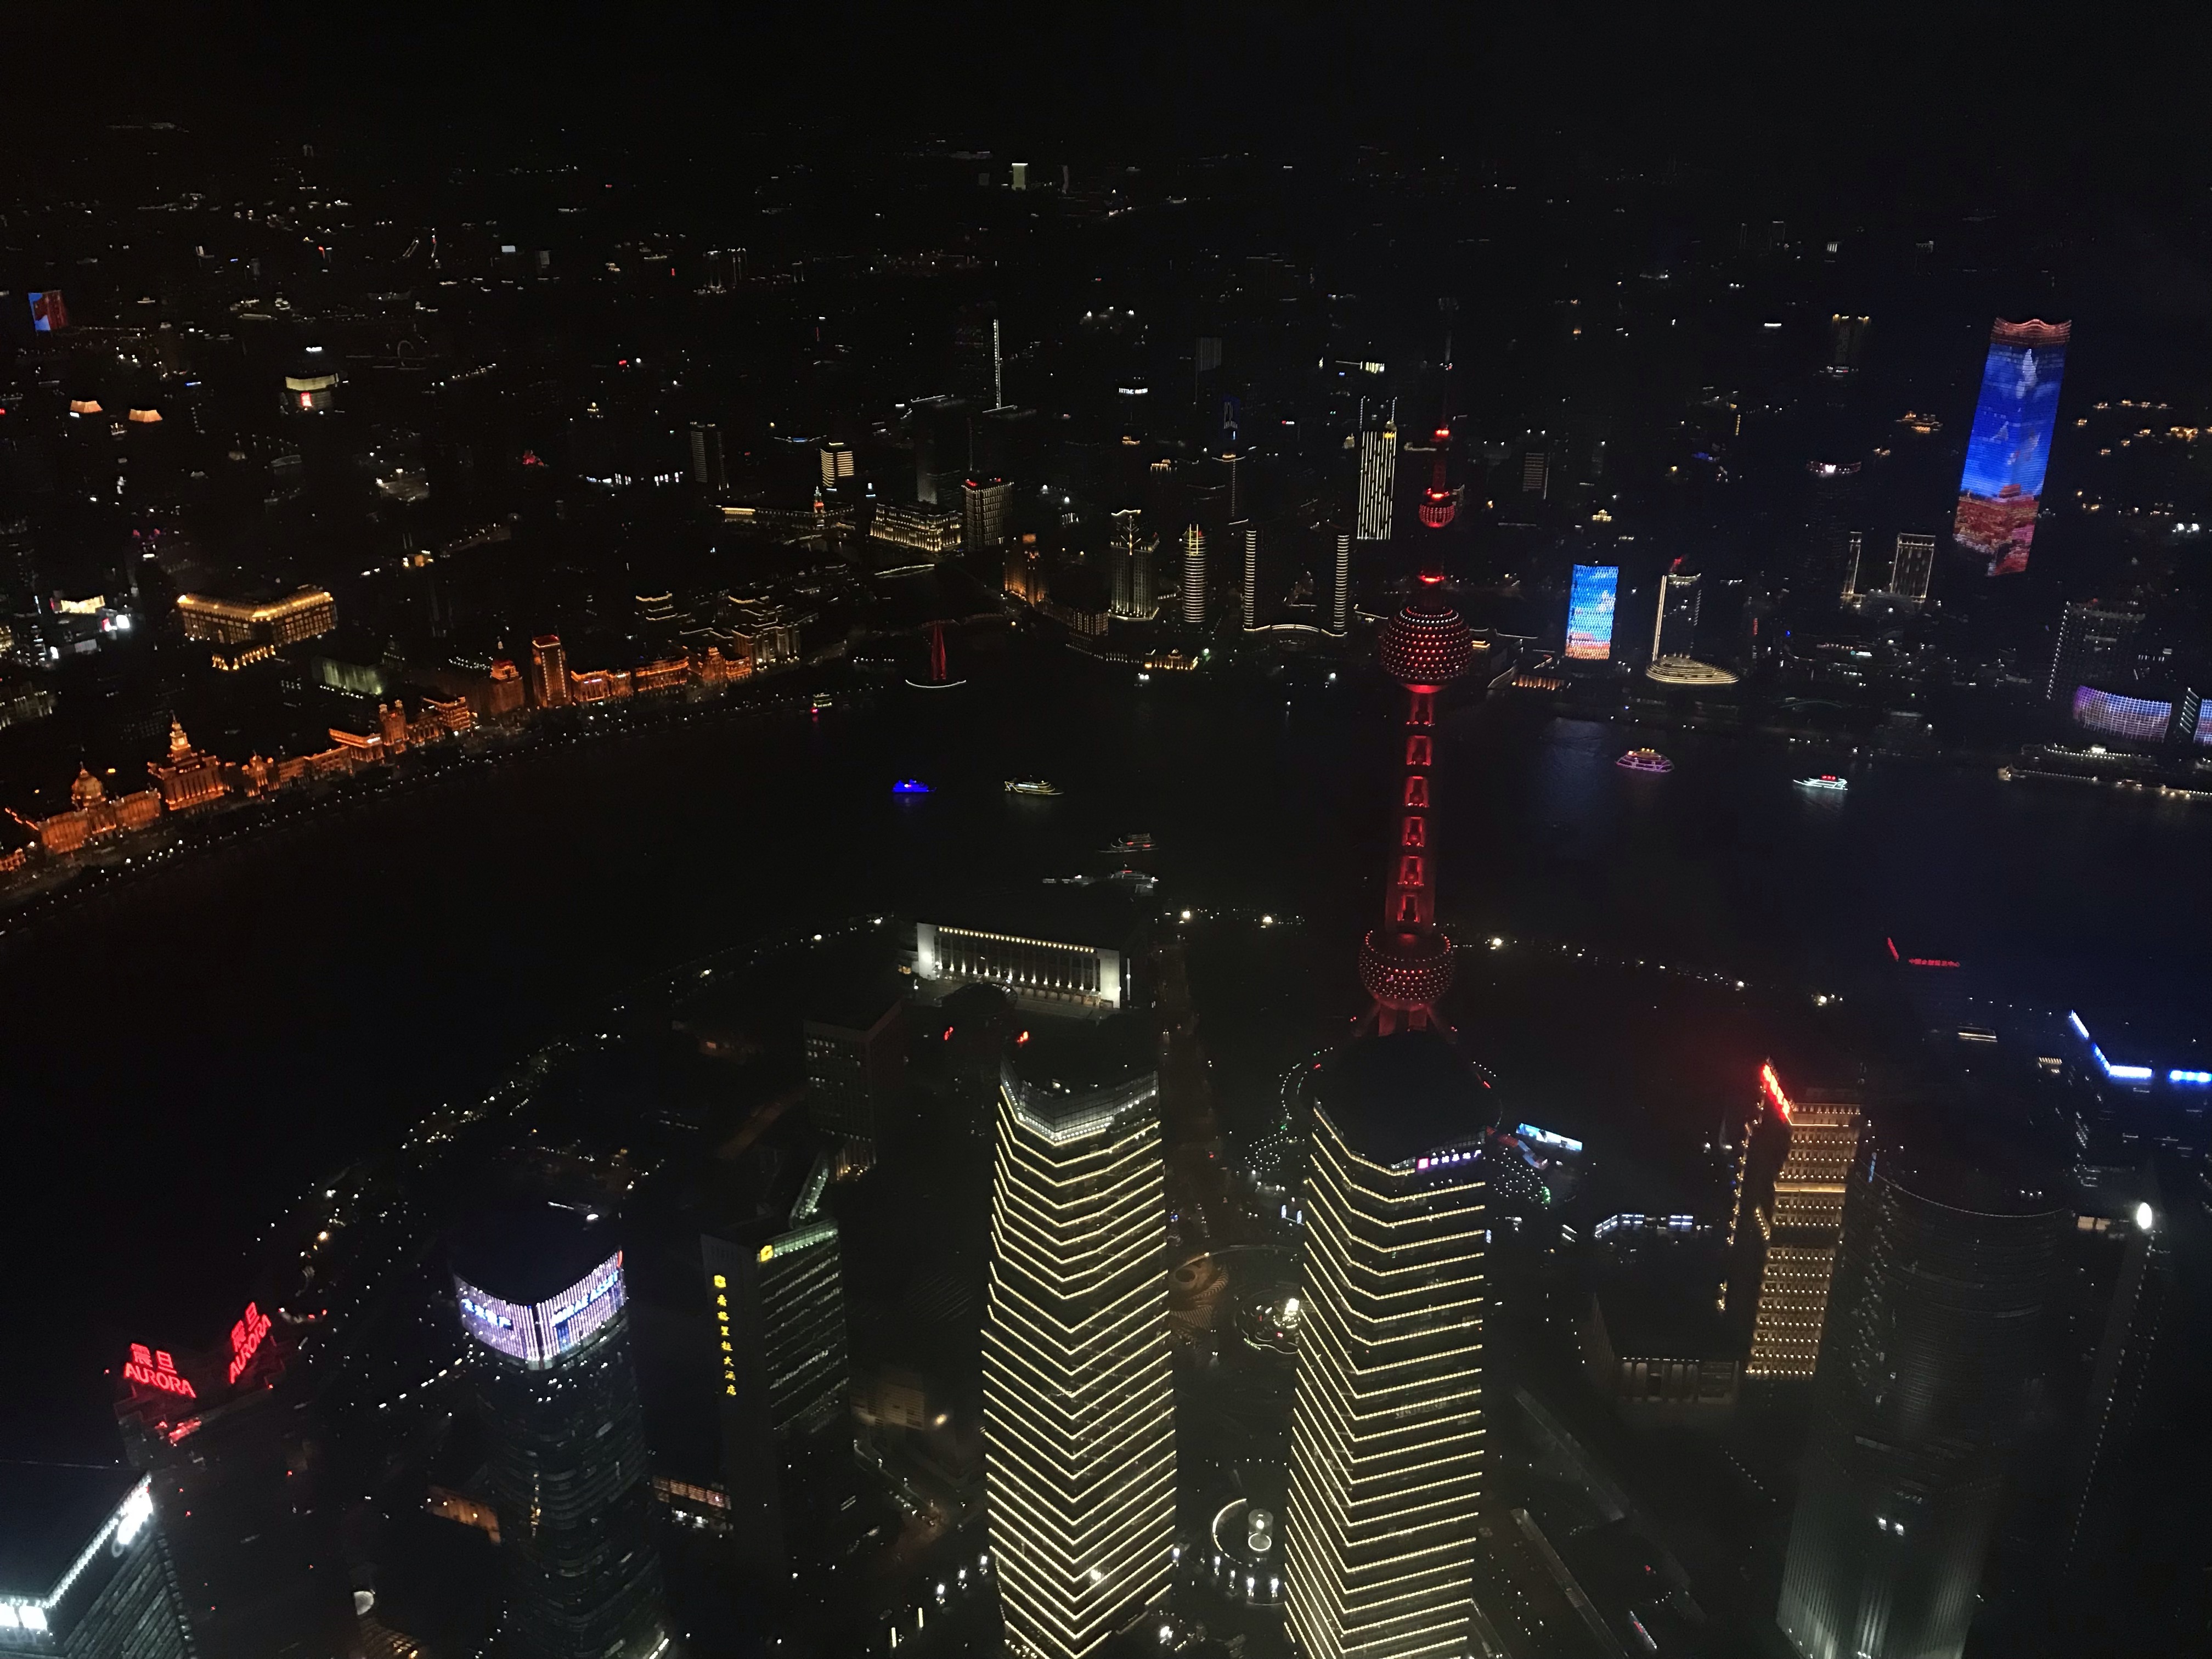 Shanghai Tower view